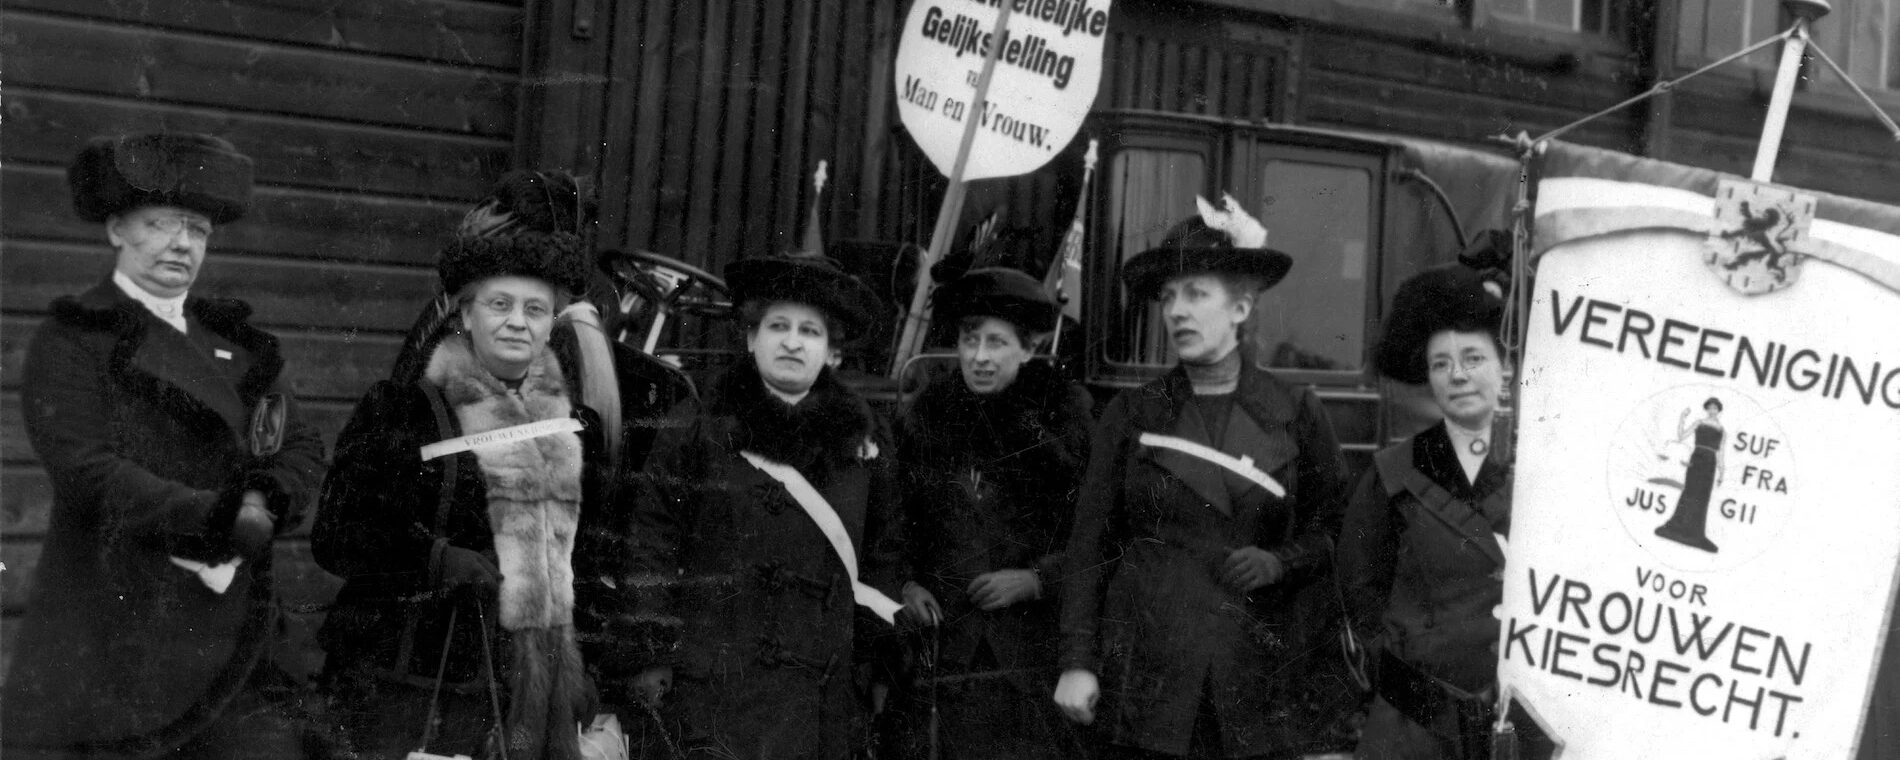 Demonstratie voor vrouwenkiesrecht (Amsterdam, 1914)